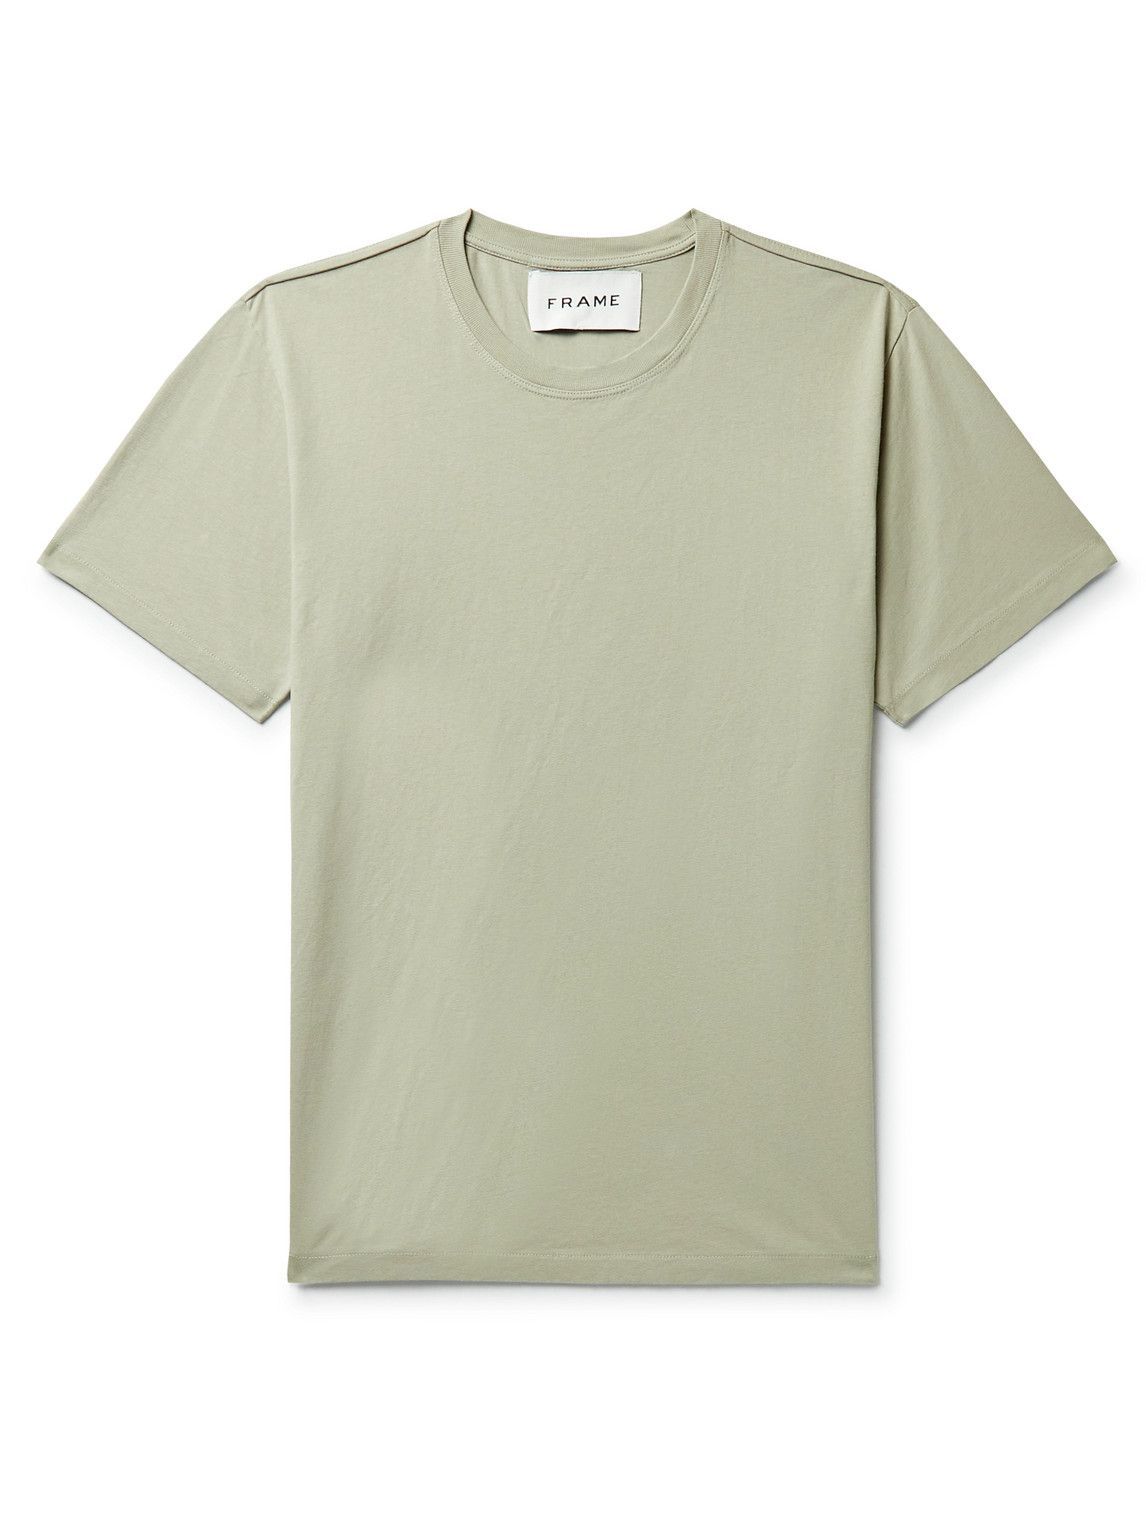 FRAME - Cotton-Jersey T-Shirt - Green Frame Denim